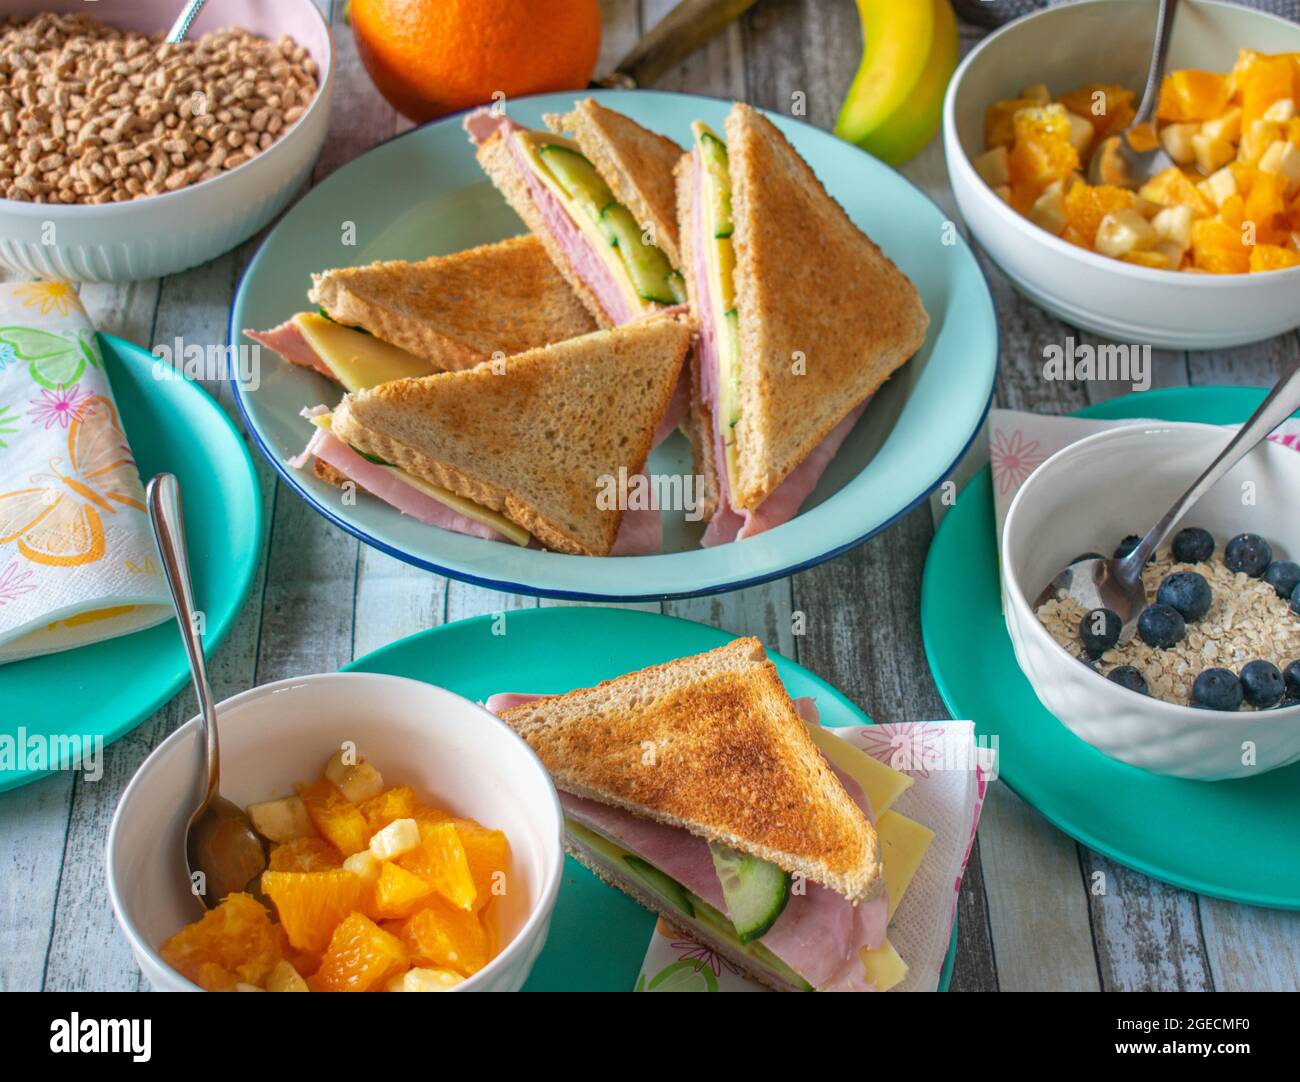 La vida doméstica. Mesa con alimentos saludables para el desayuno, como sándwiches, cereales y frutas Foto de stock